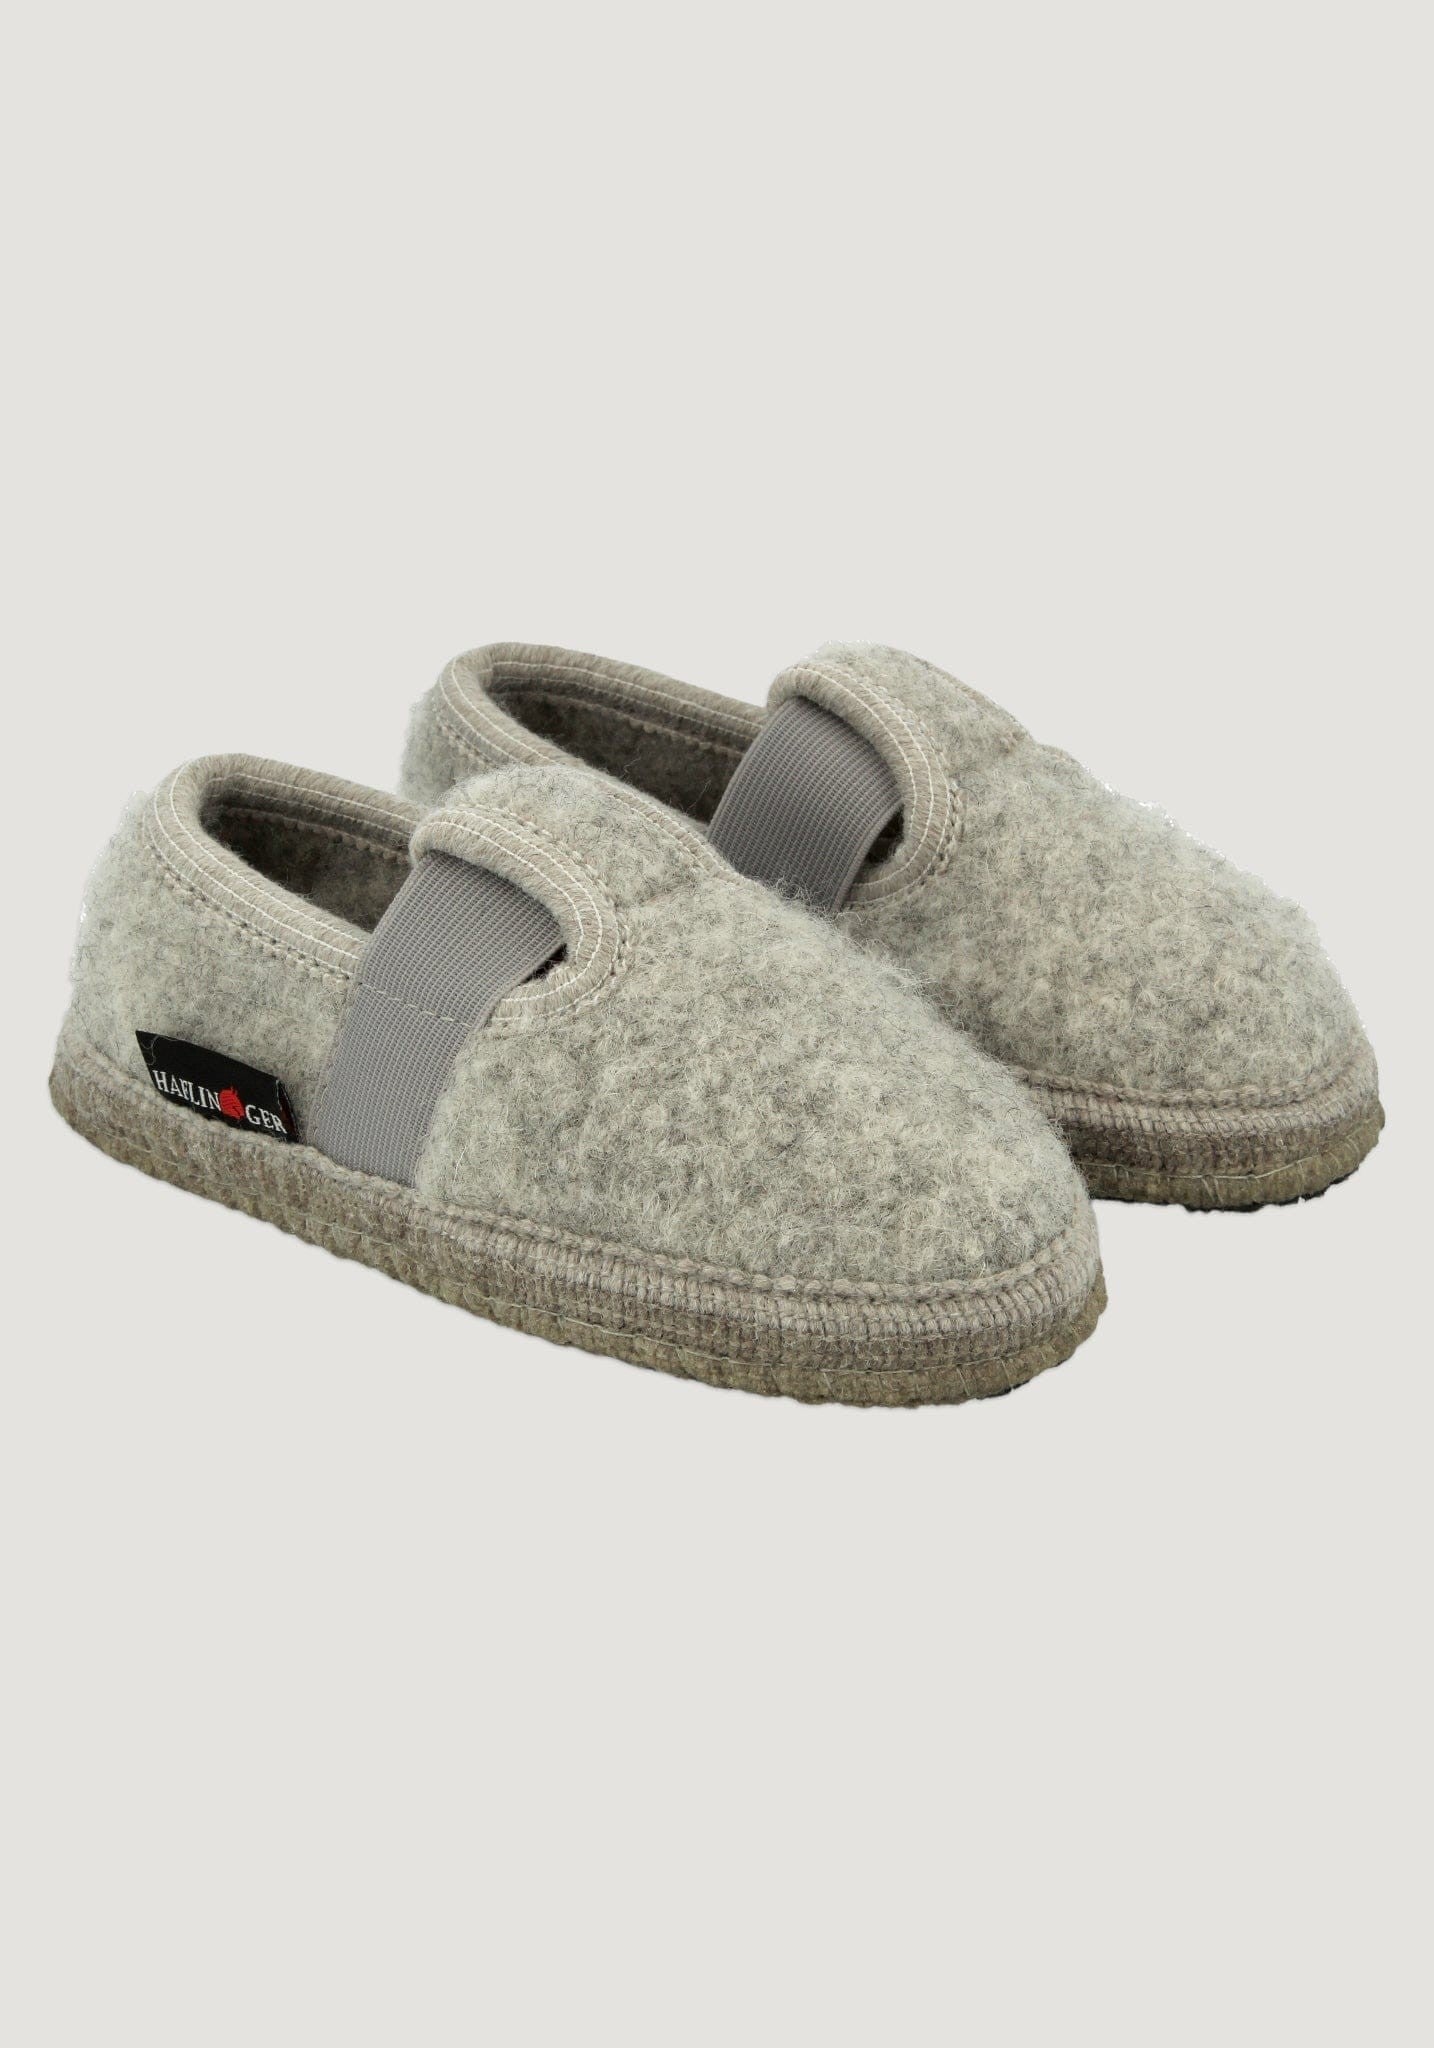 Pantofi interior Haflinger din lână - Joschi Stone Grey (copii si adulti)